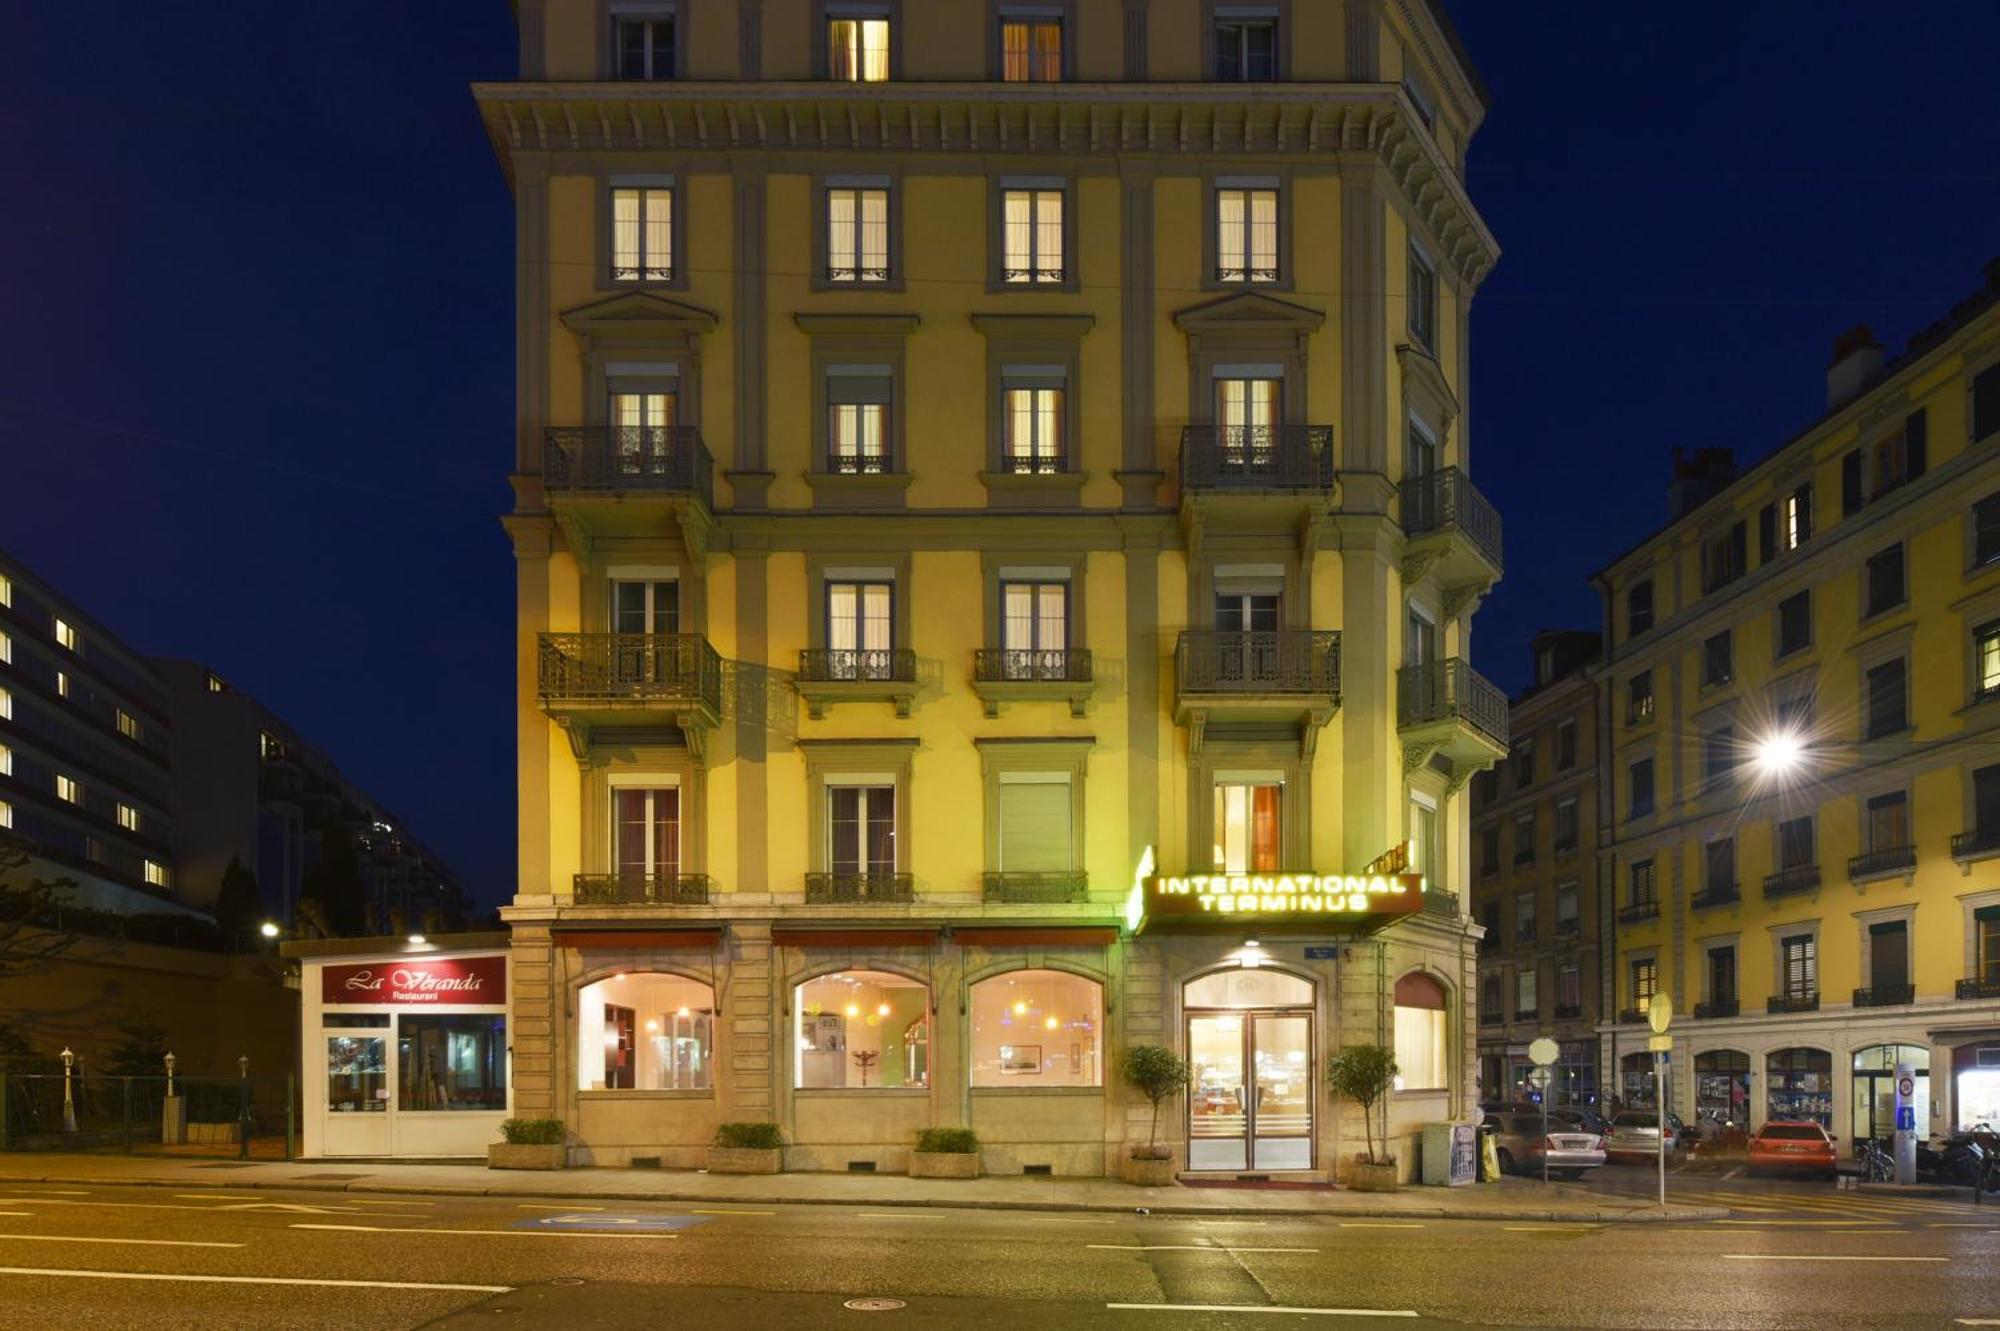 Hotel International & Terminus Geneva Exterior photo